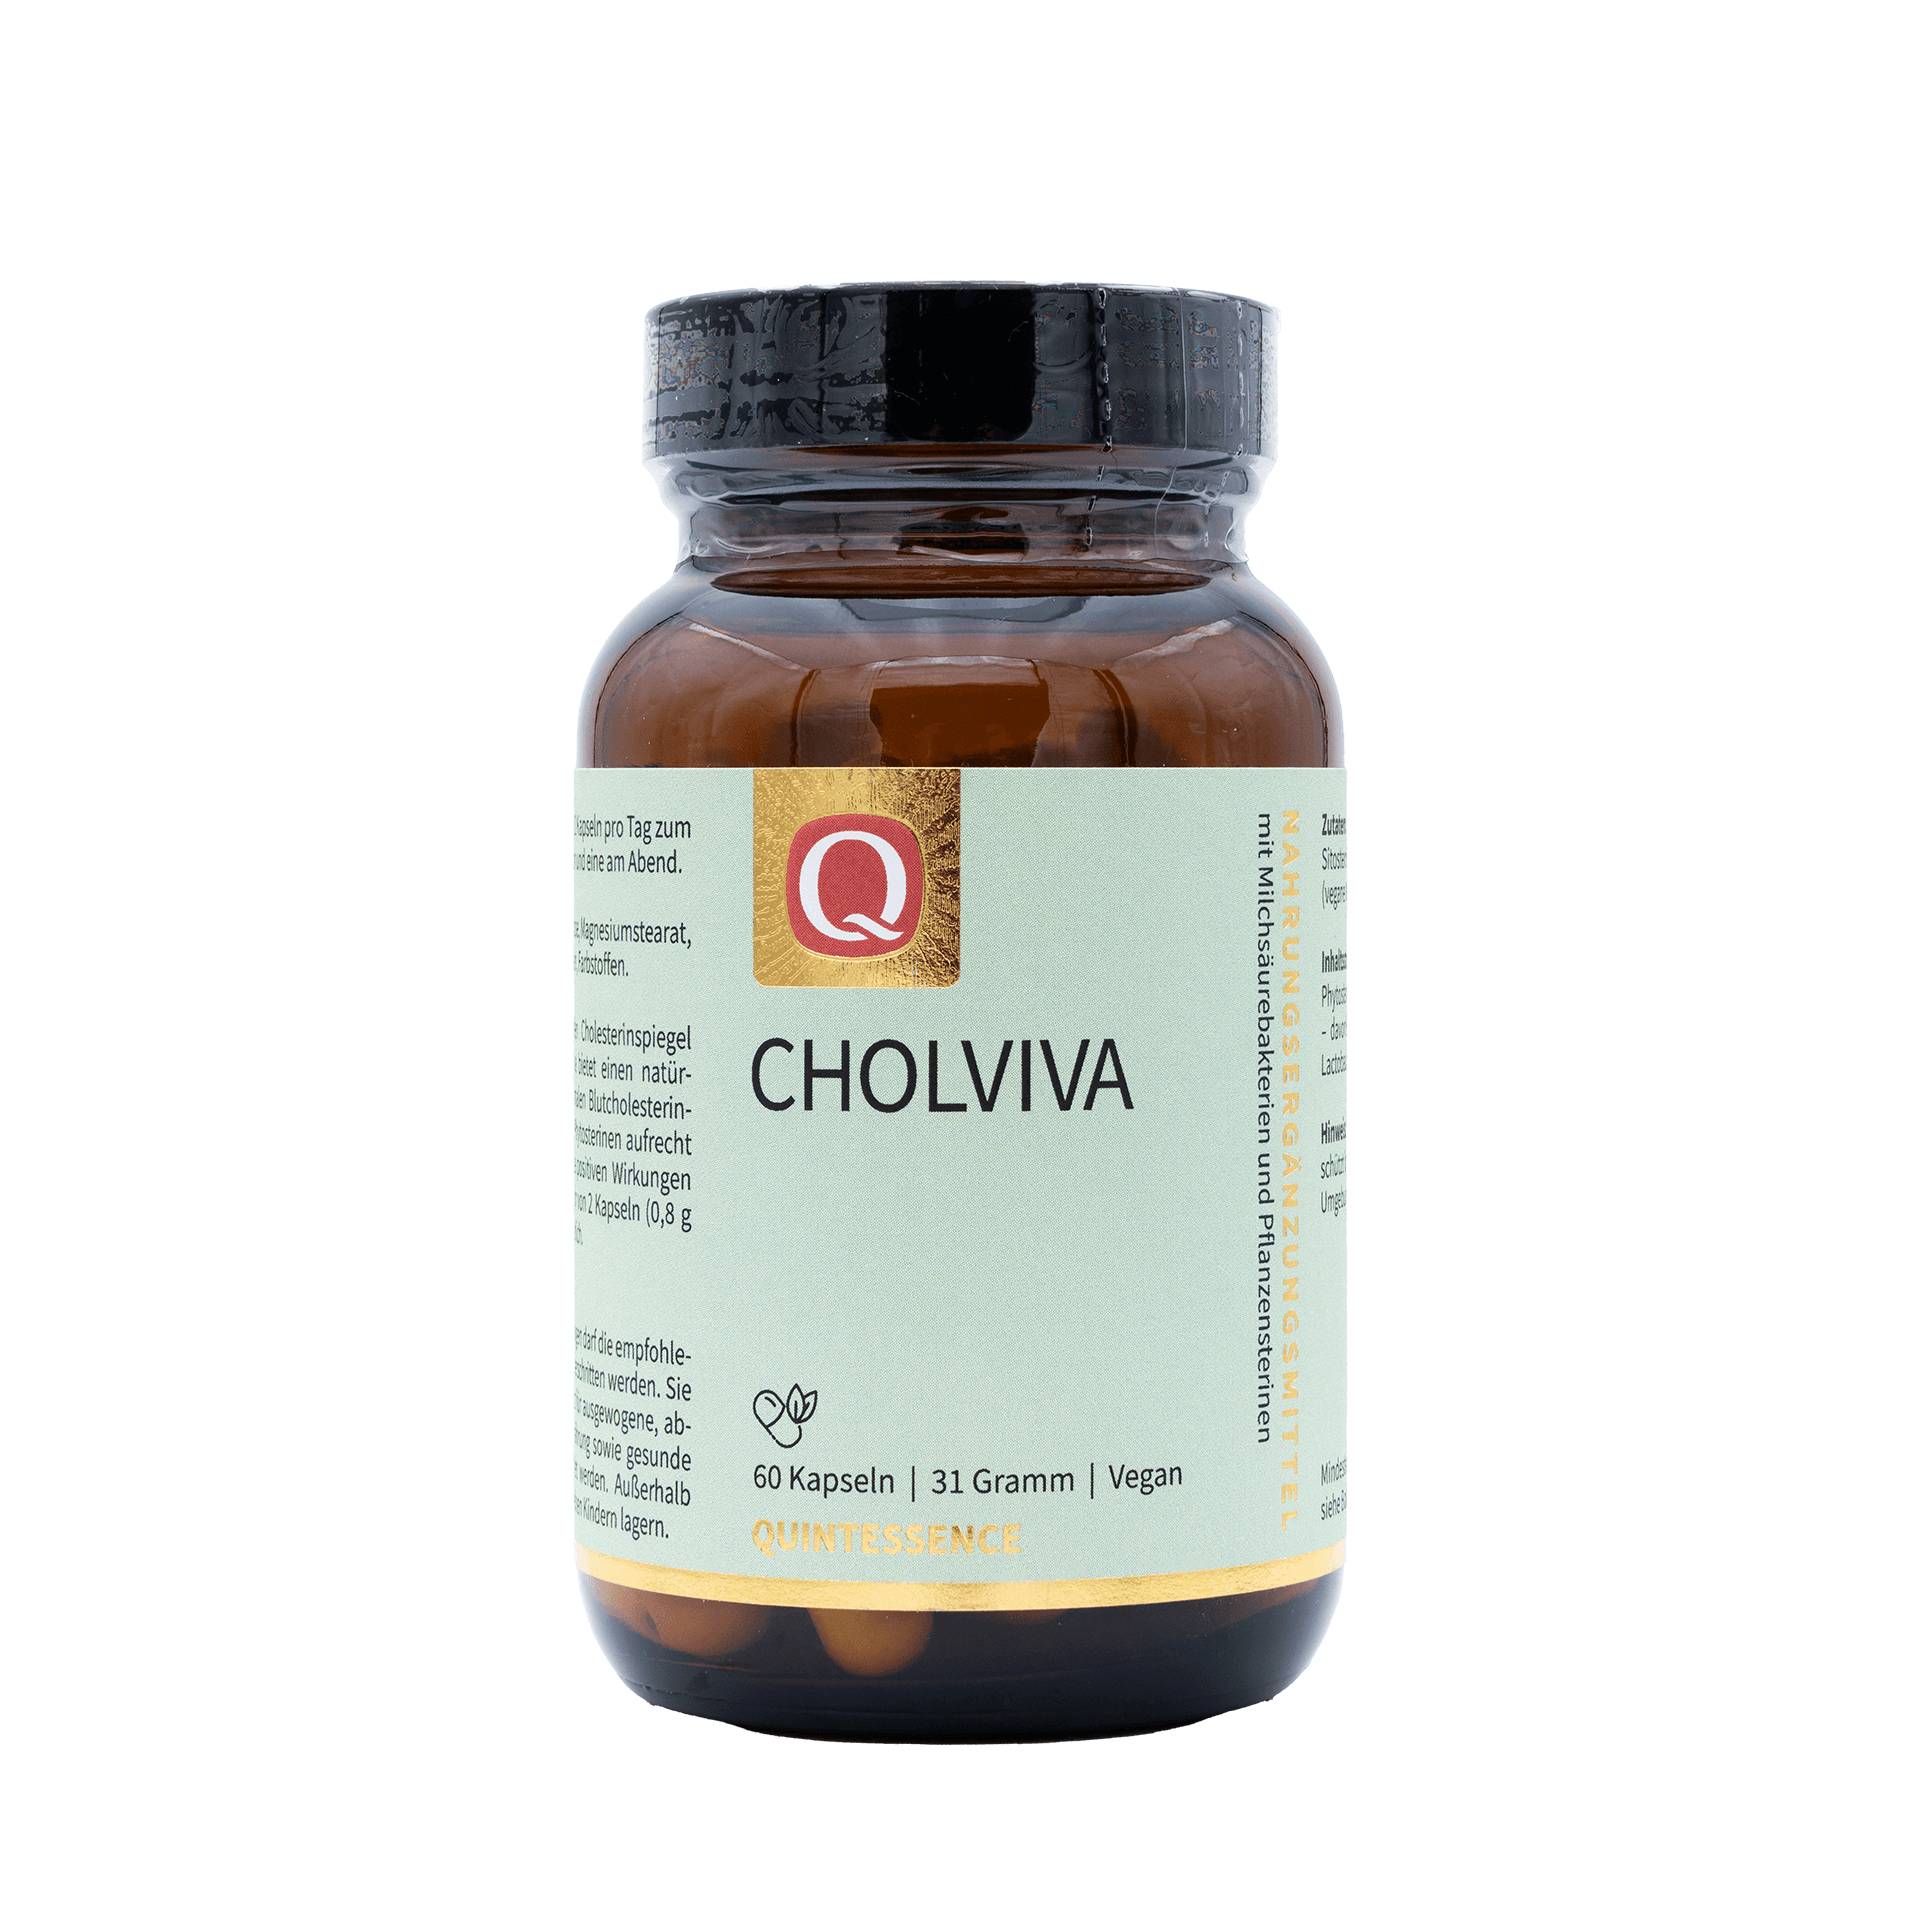 Cholviva 60 Kapseln - 2,5 Milliarden Milchsäurebakterien pro Kapsel - Glutenfrei - Vegan - Quintessence von Quintessence